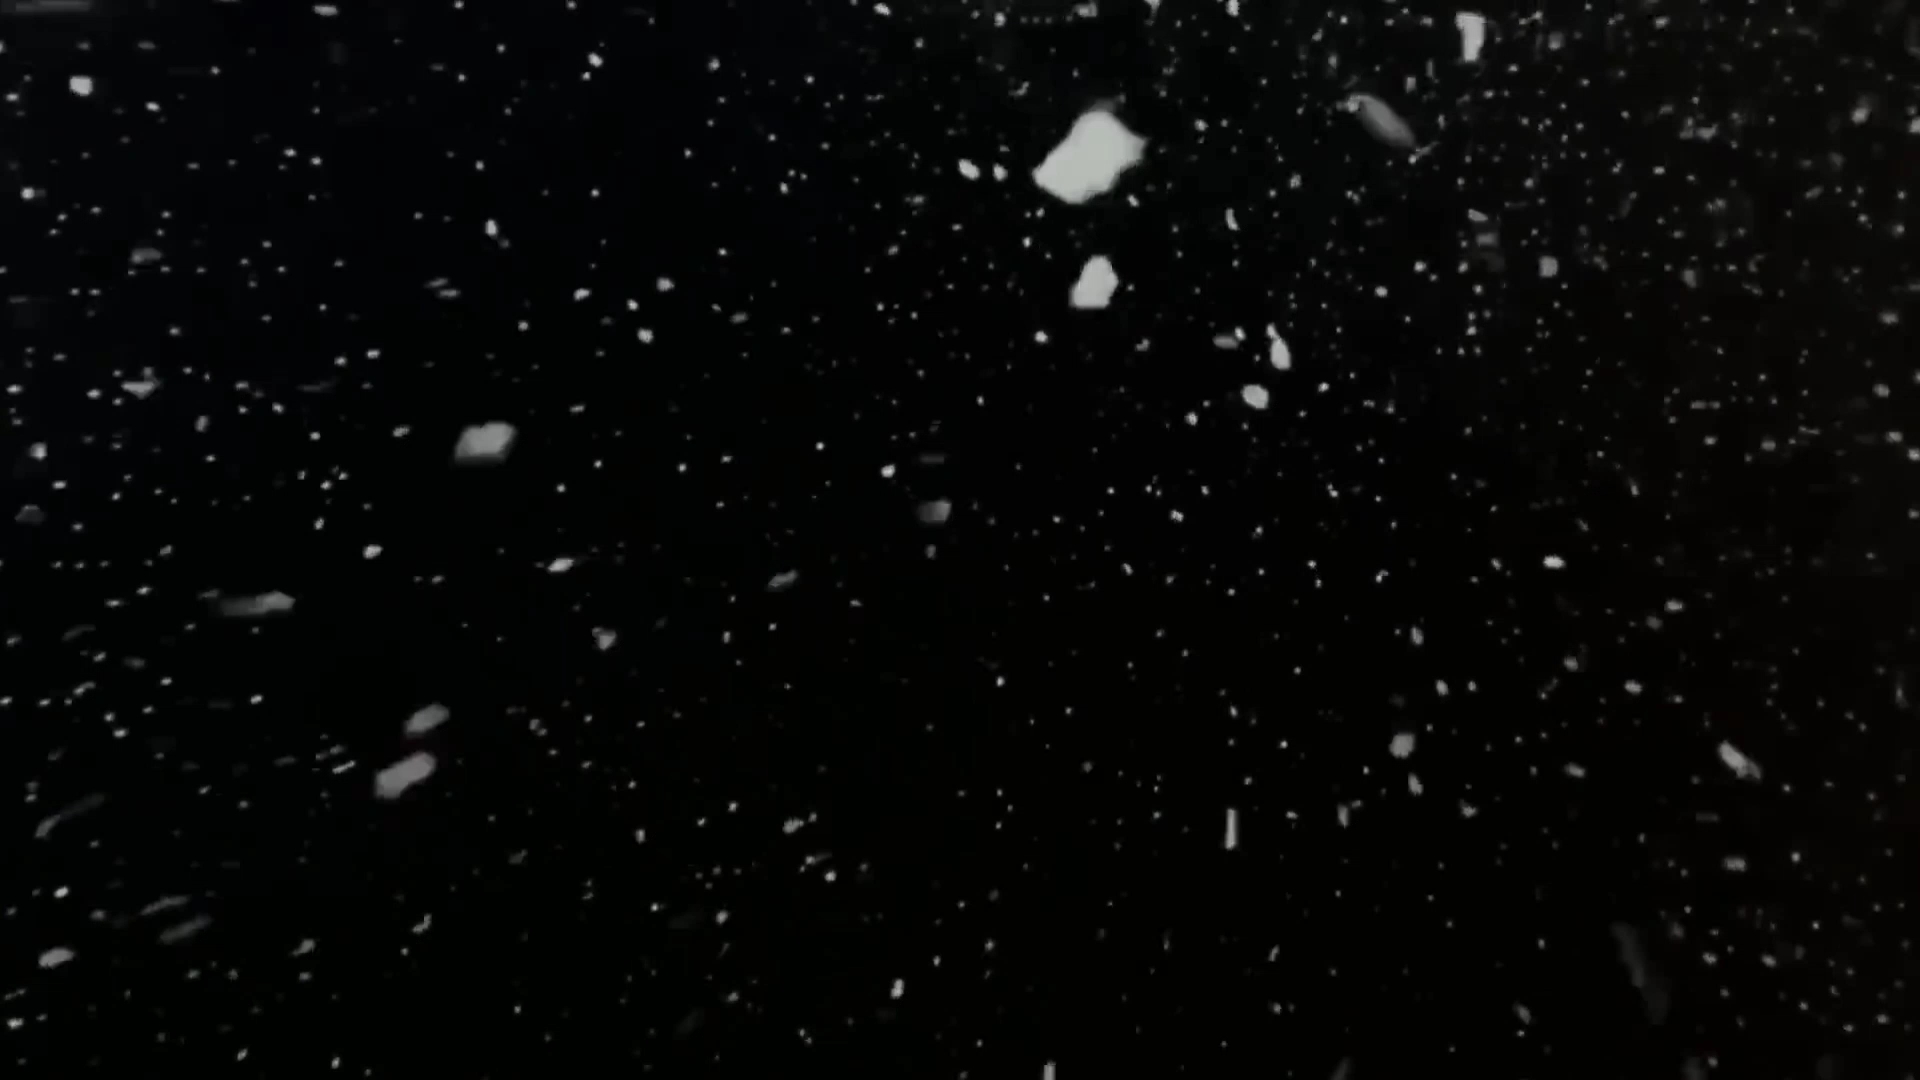 下雪的图片实景夜晚图片